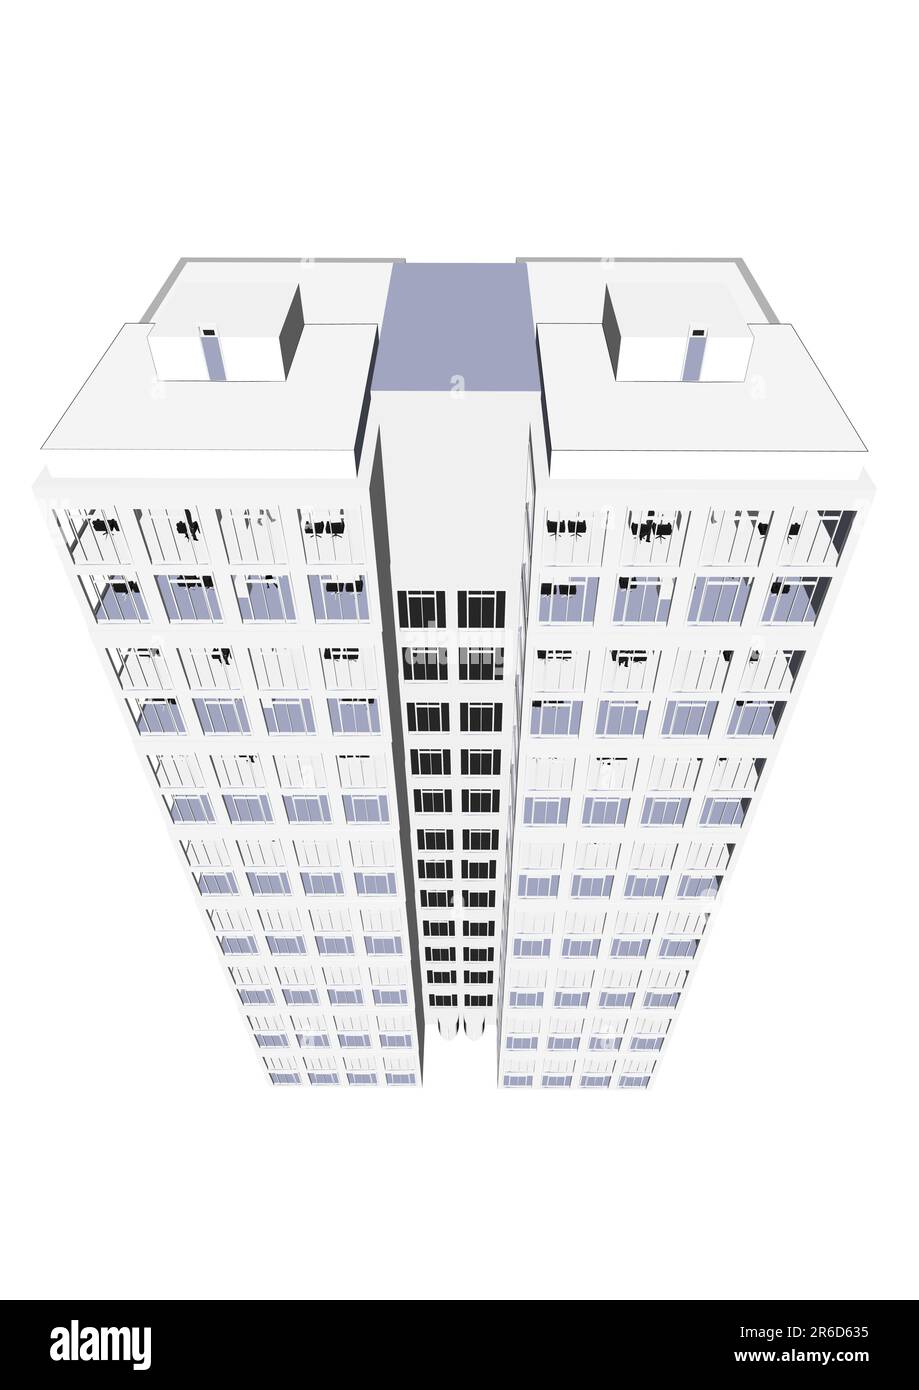 Skyscraper / Office Block au format vectoriel. Chaque caractéristique de chaque bâtiment, y compris les portes et les fenêtres, peut être modifiée ou colorée en fonction de l'équipement. Illustration de Vecteur